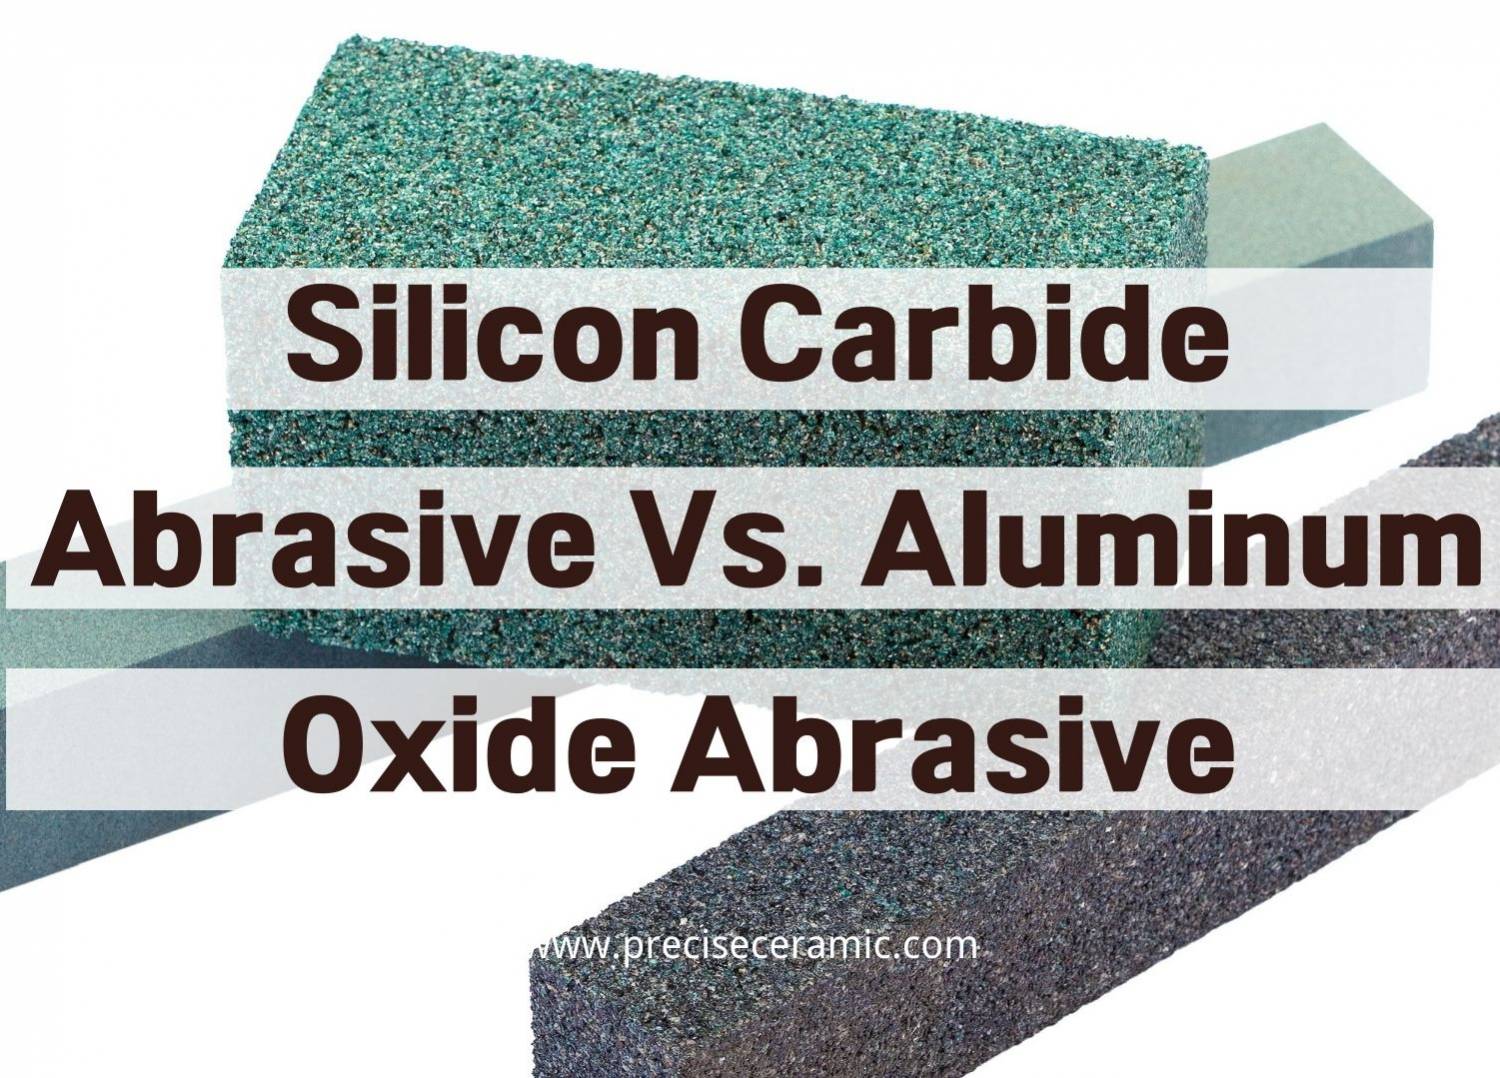 Silicon Carbide Abrasive Vs. Aluminum Oxide Abrasive